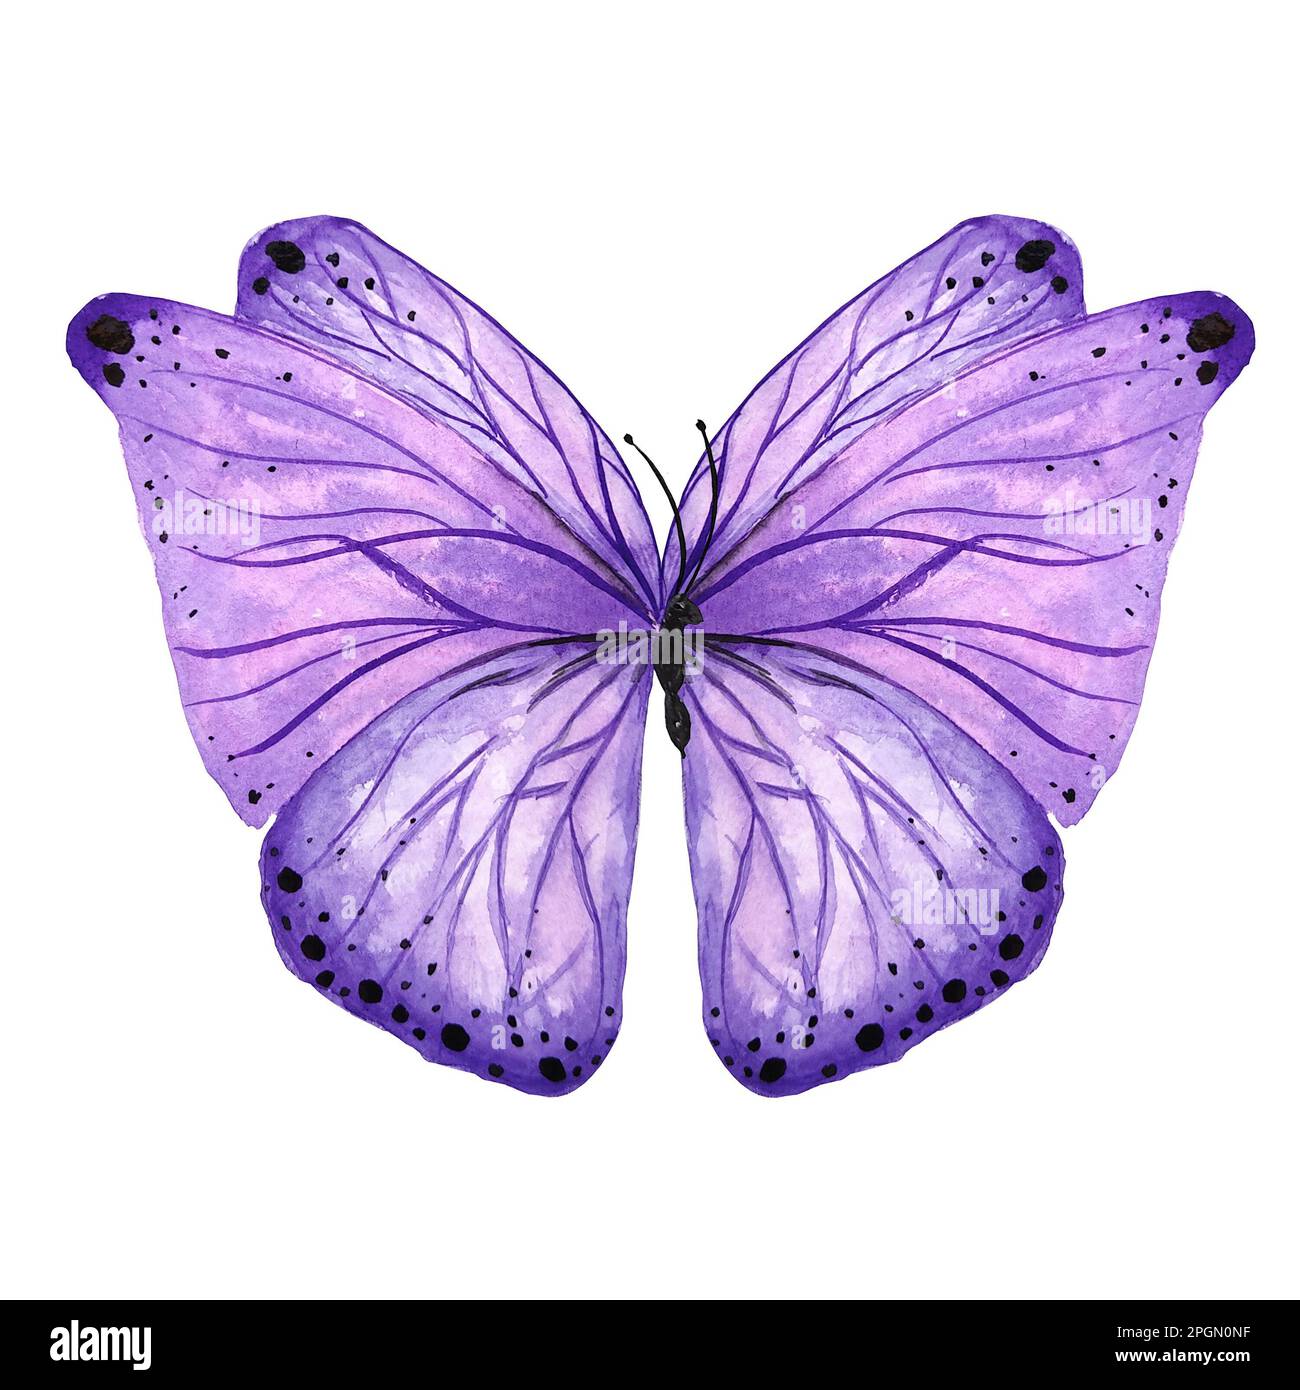 Illustration isolée papillon violet aquarelle. Insecte de style botanique peint à la main sur fond blanc pour une utilisation dans le mariage, les vacances, la conception d'enfants Banque D'Images